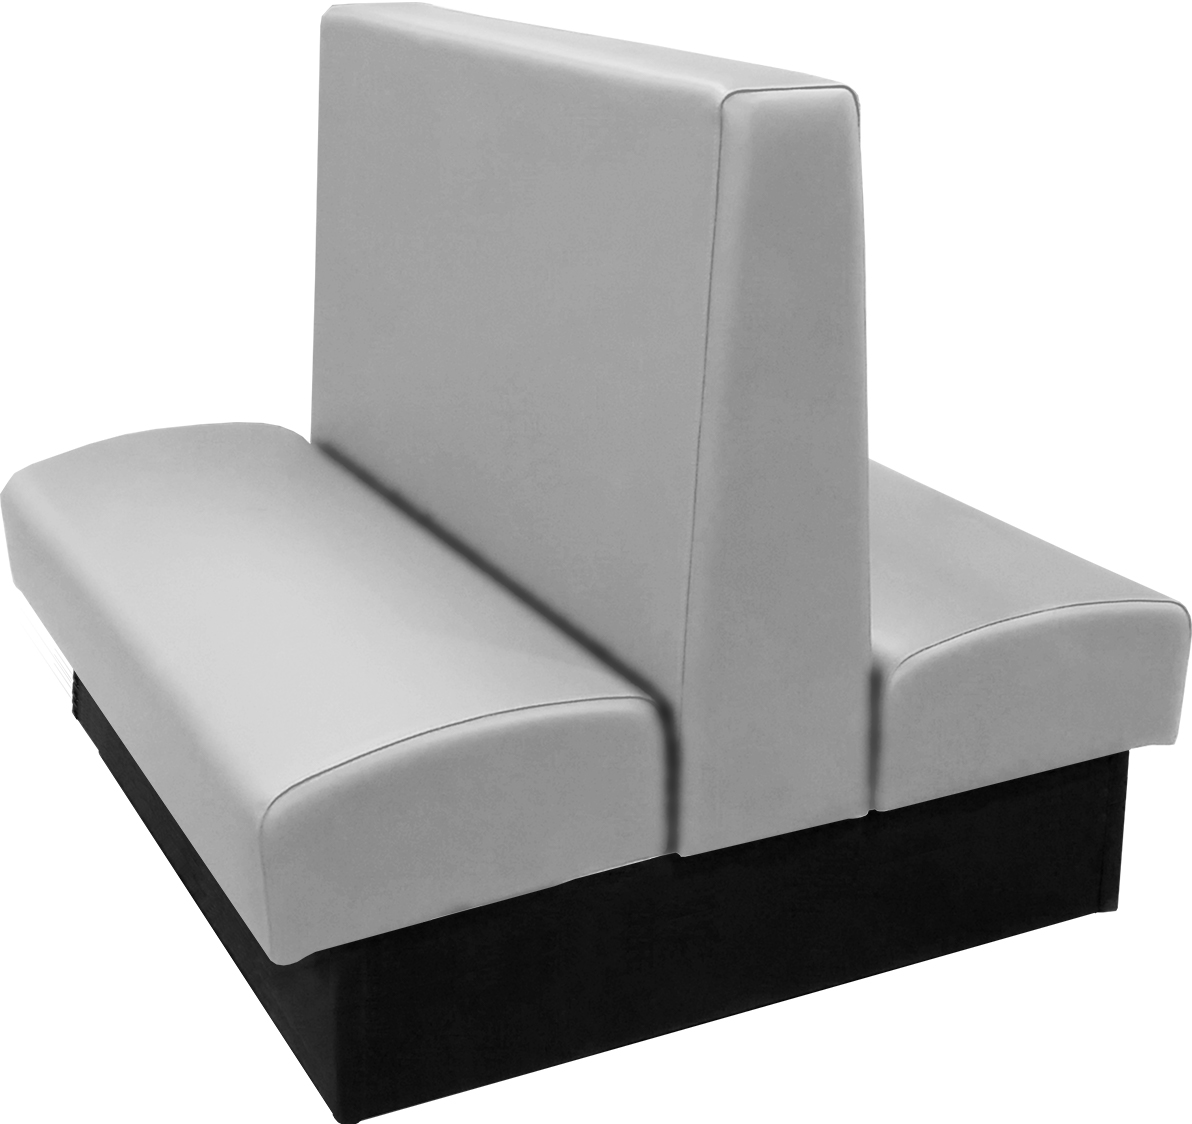 Ambrose vinyl-upholstered double restaurant booth gray vinyl